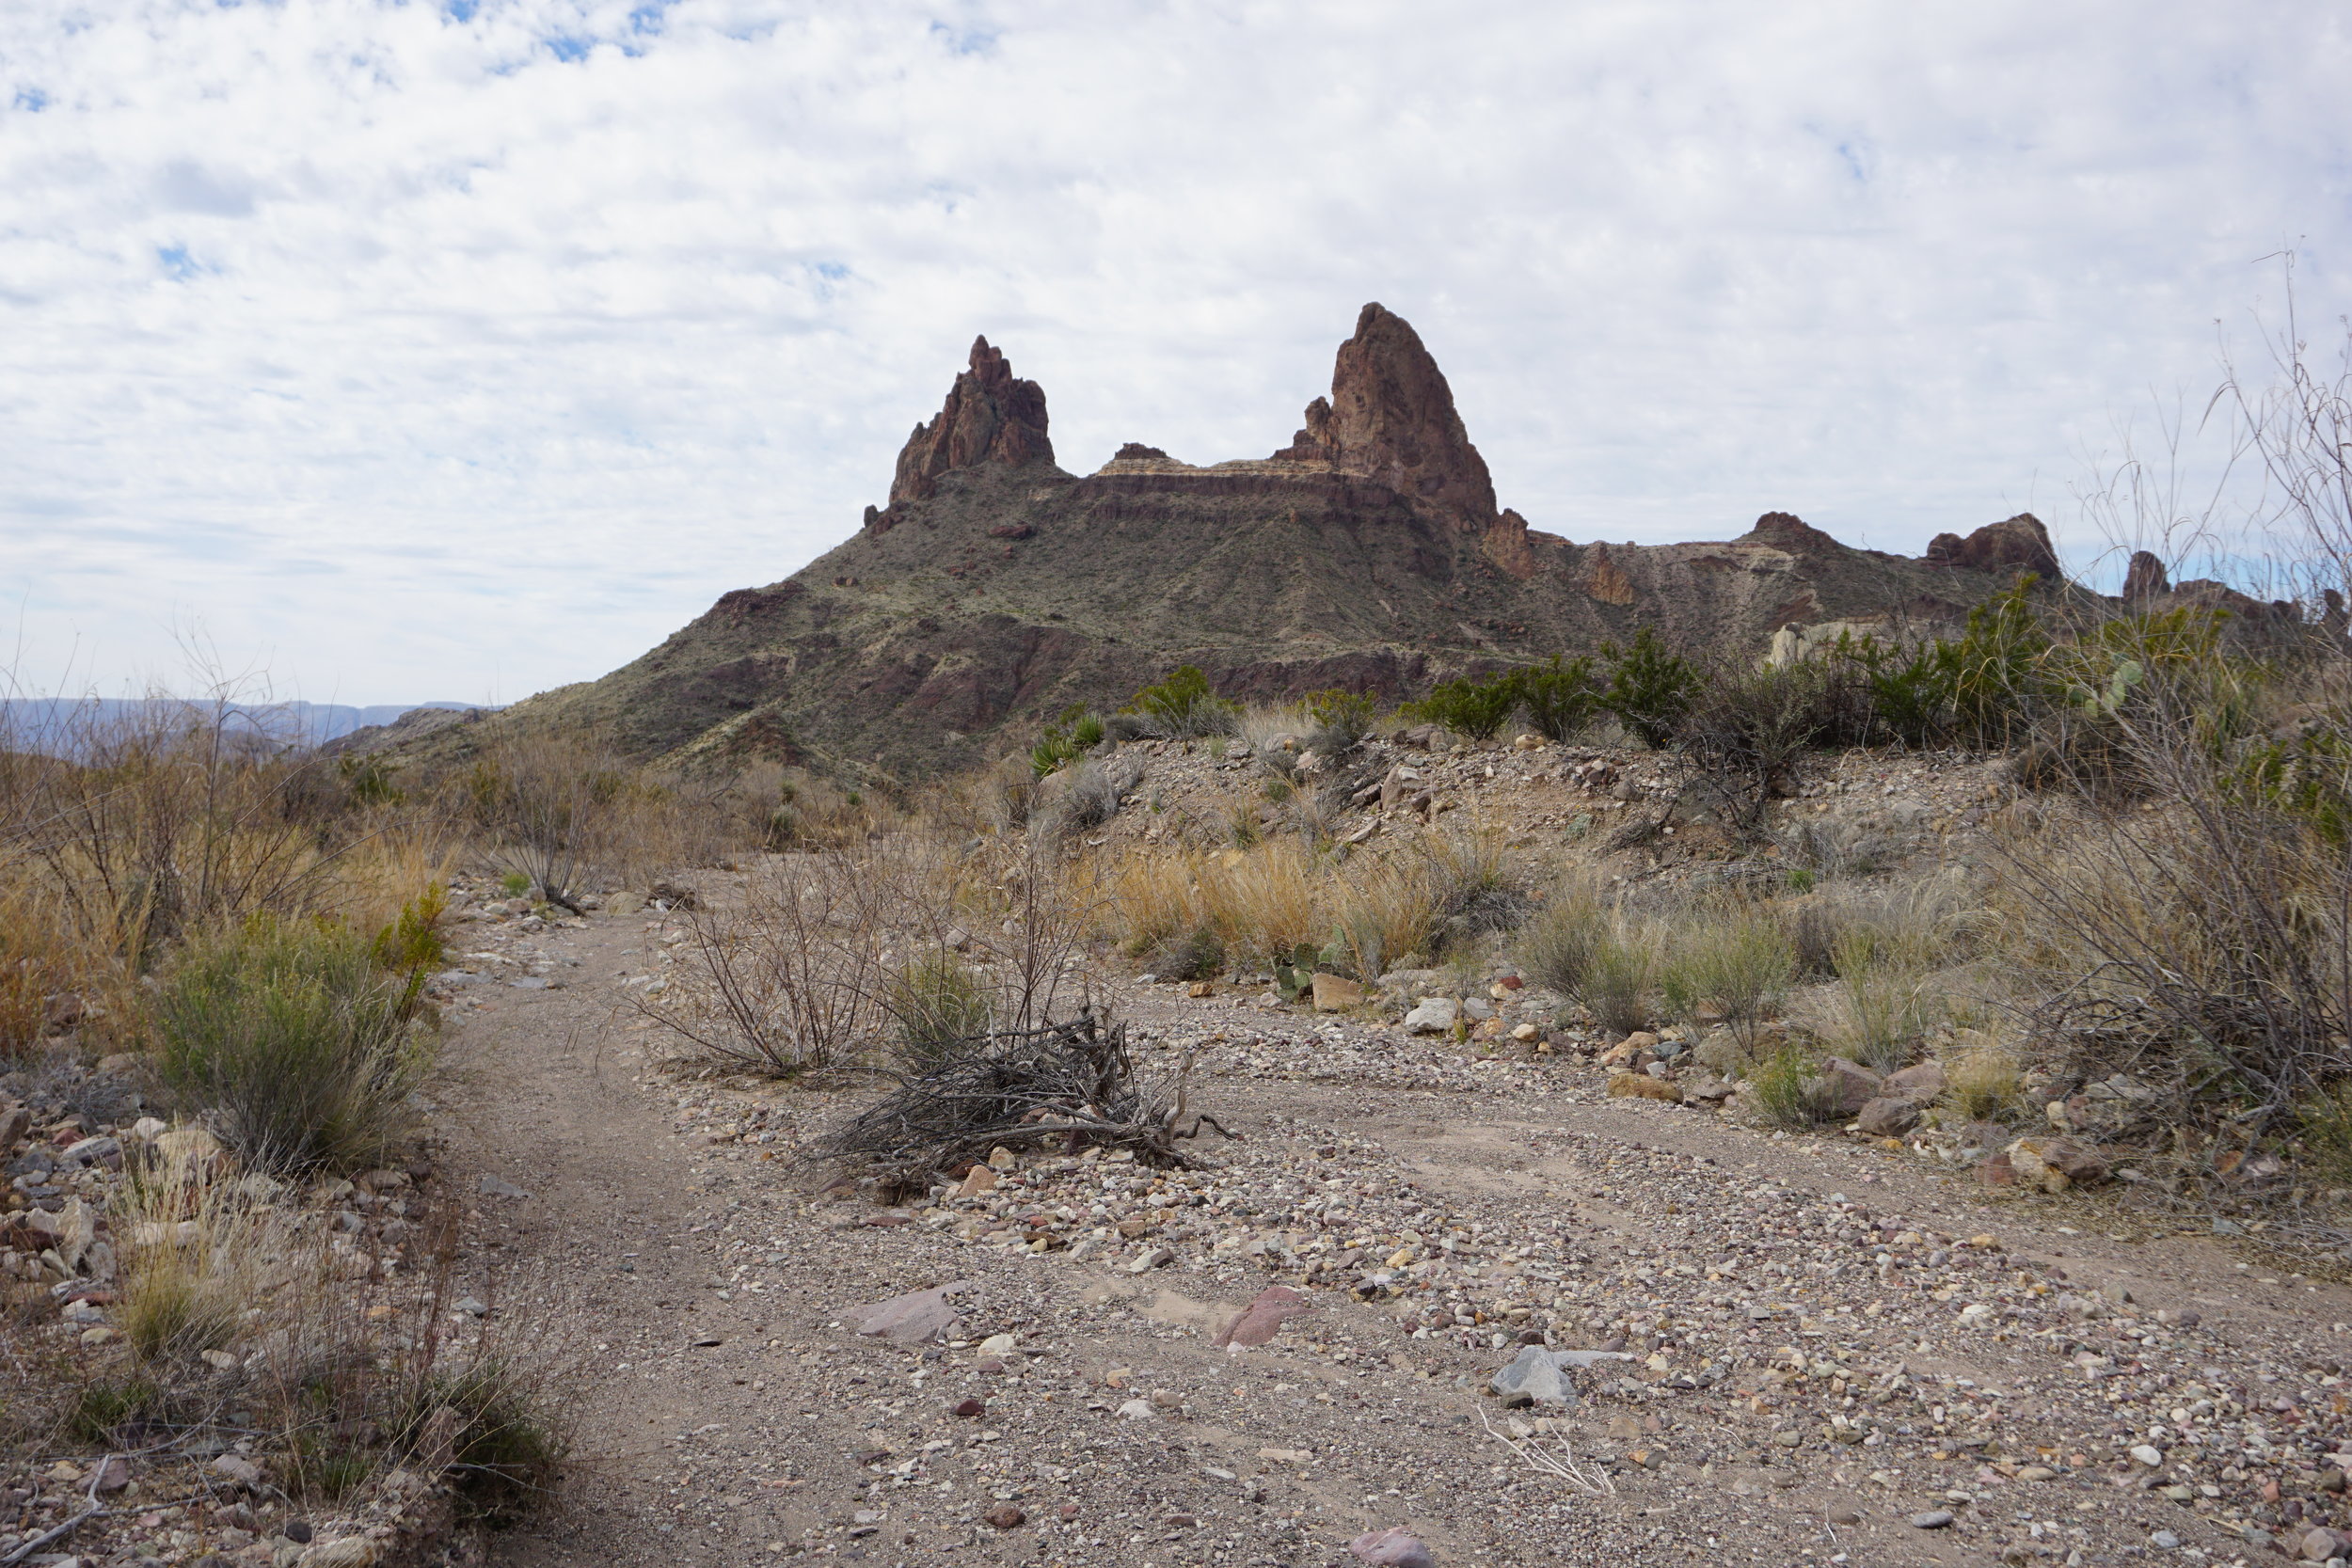 Mule Ears mountain range in the Texas desert